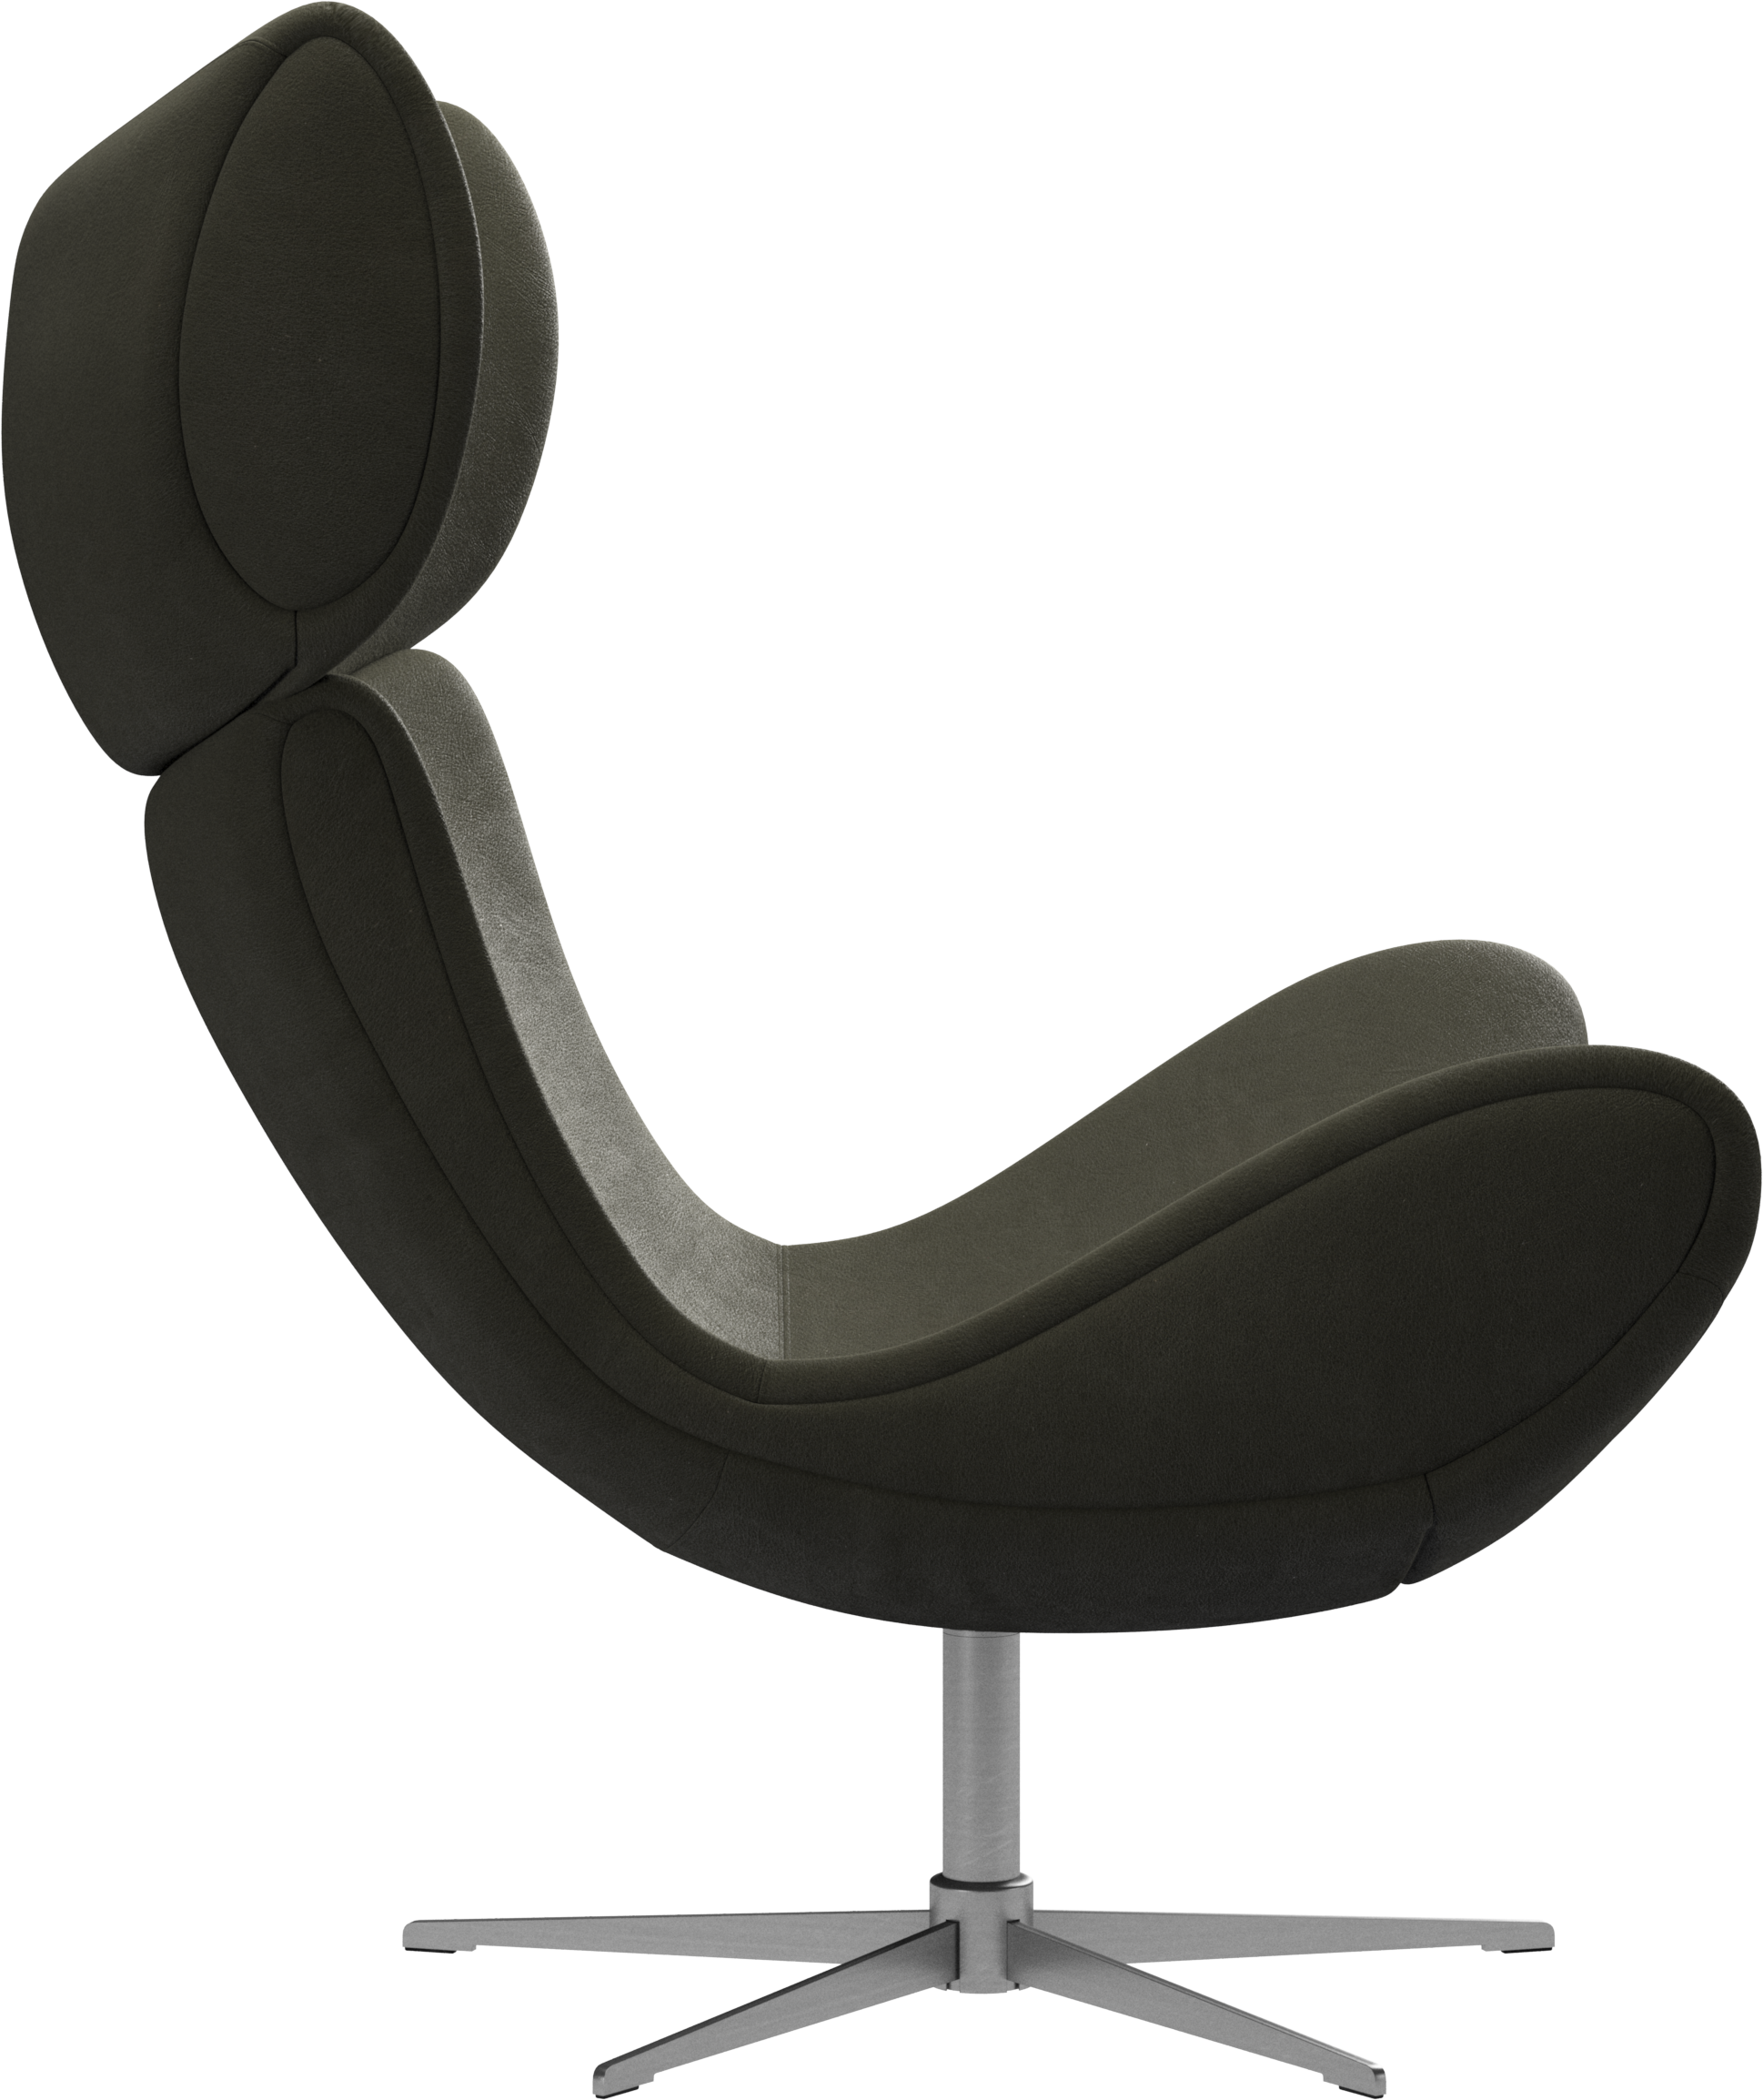 特注製品BoConcept ボーコンセプト OGIチェア オギチェア 回転ベース付き ファブリック 一人掛け リビングチェア モダンデザイン 北欧 椅子 金属製フレーム